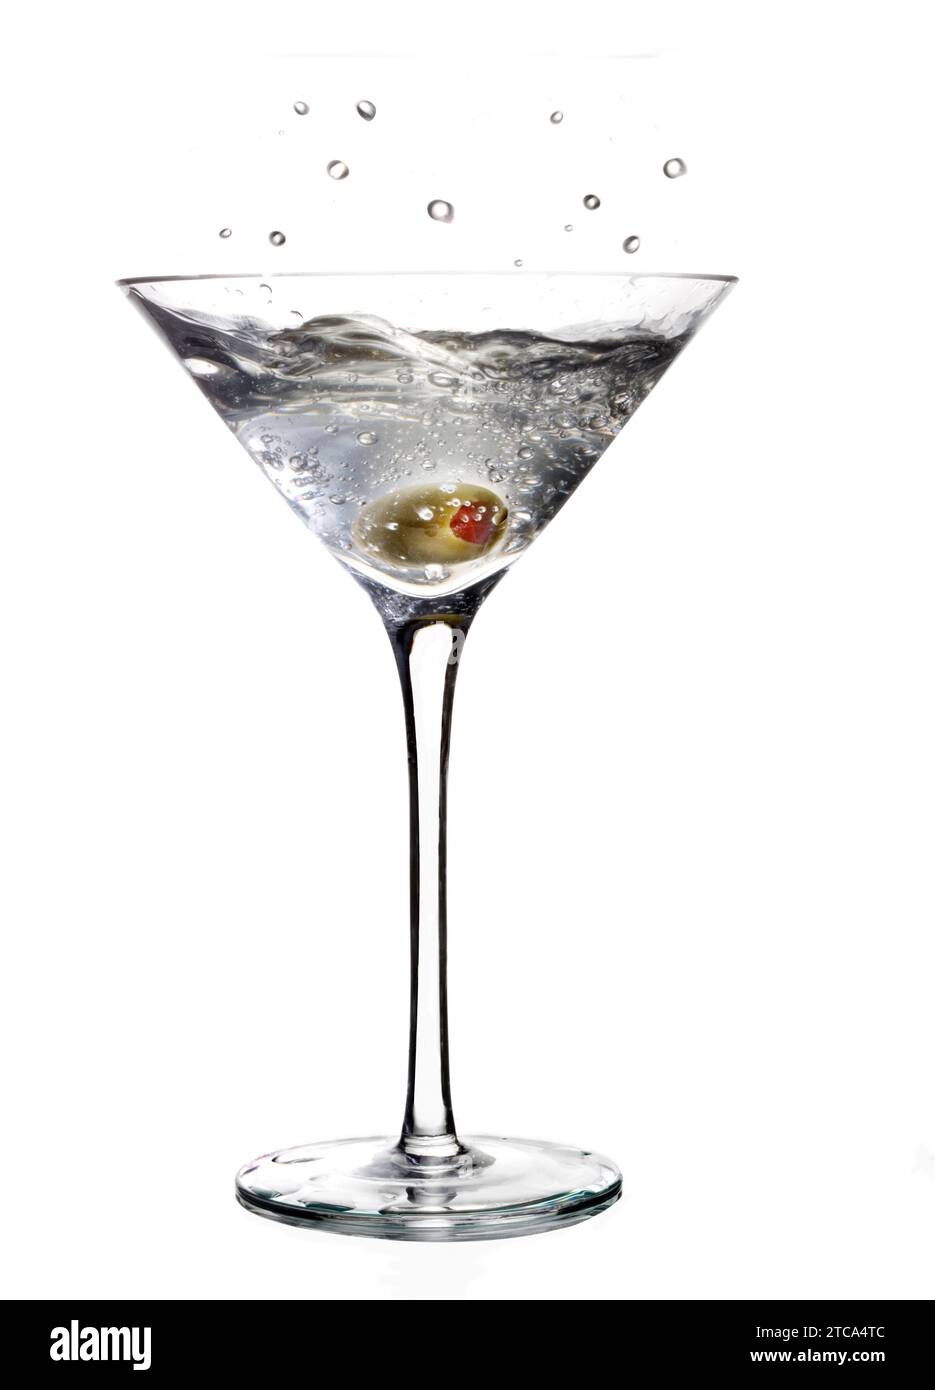 Éclaboussure de boisson mélangée Martini avec garniture d'olive sur un fond gris clair avec reflet Banque D'Images